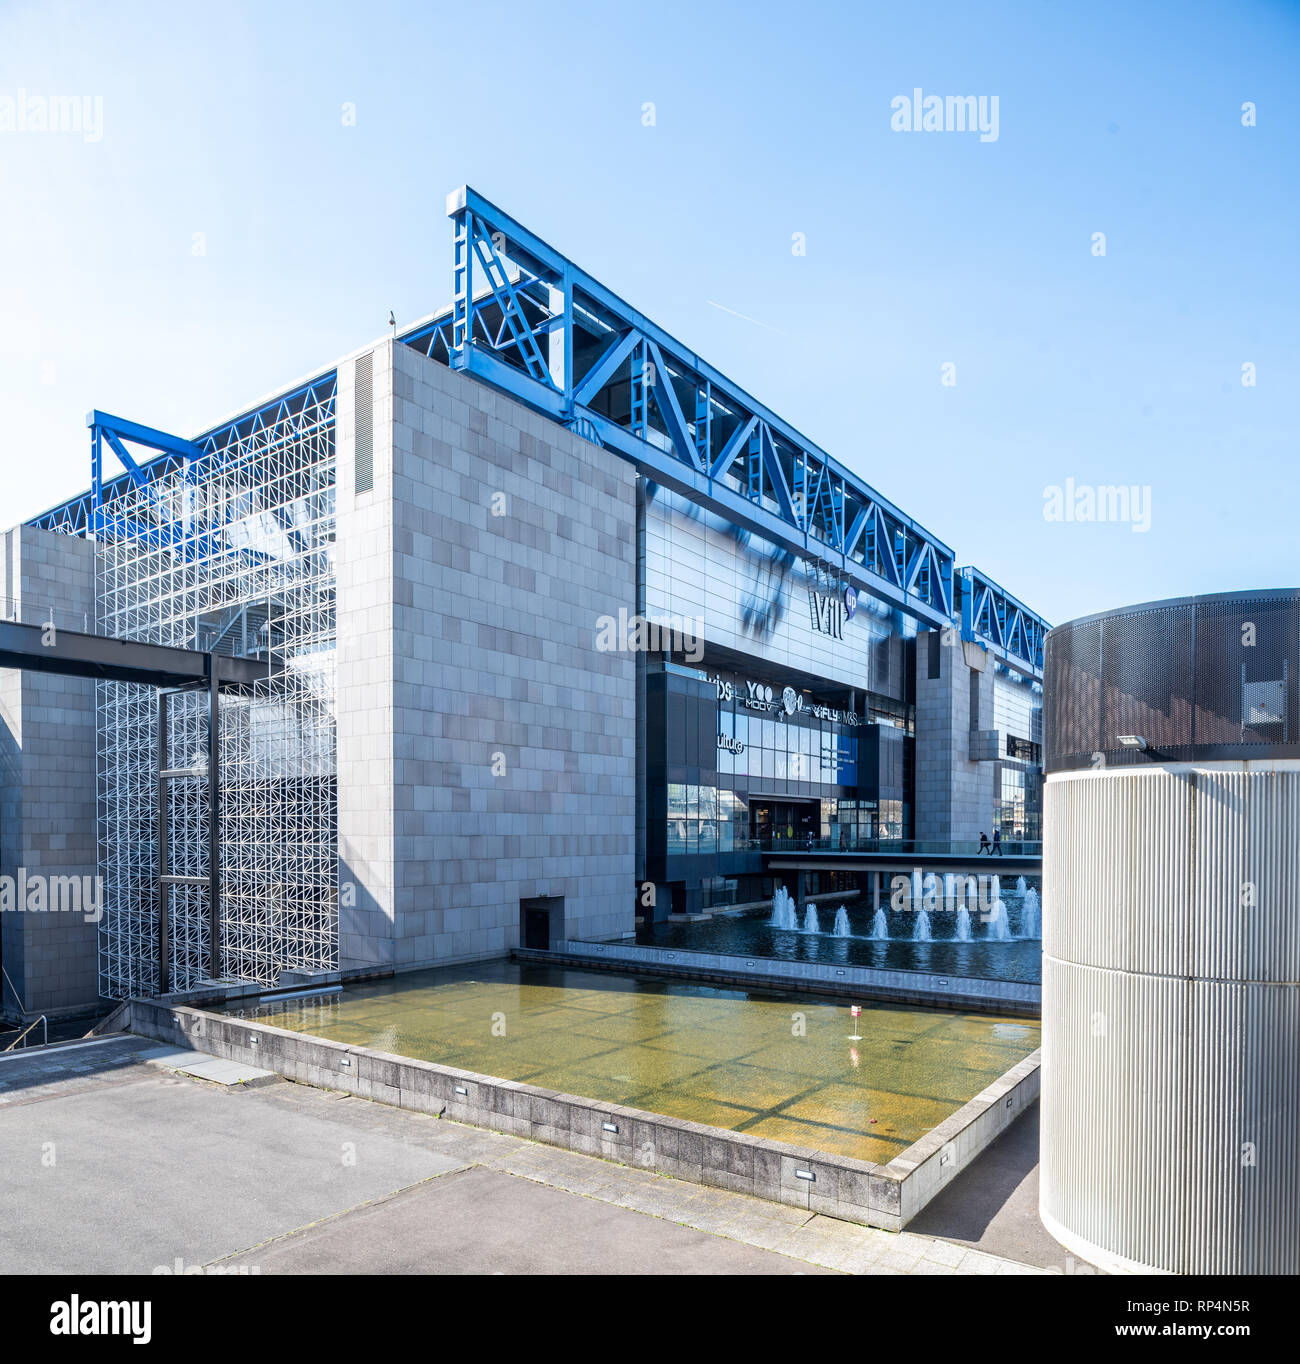 France, Paris - 6 Avril 2018 : vue extérieure de la Cité des Sciences et de l'Industrie - le plus grand musée des sciences en Europe Banque D'Images